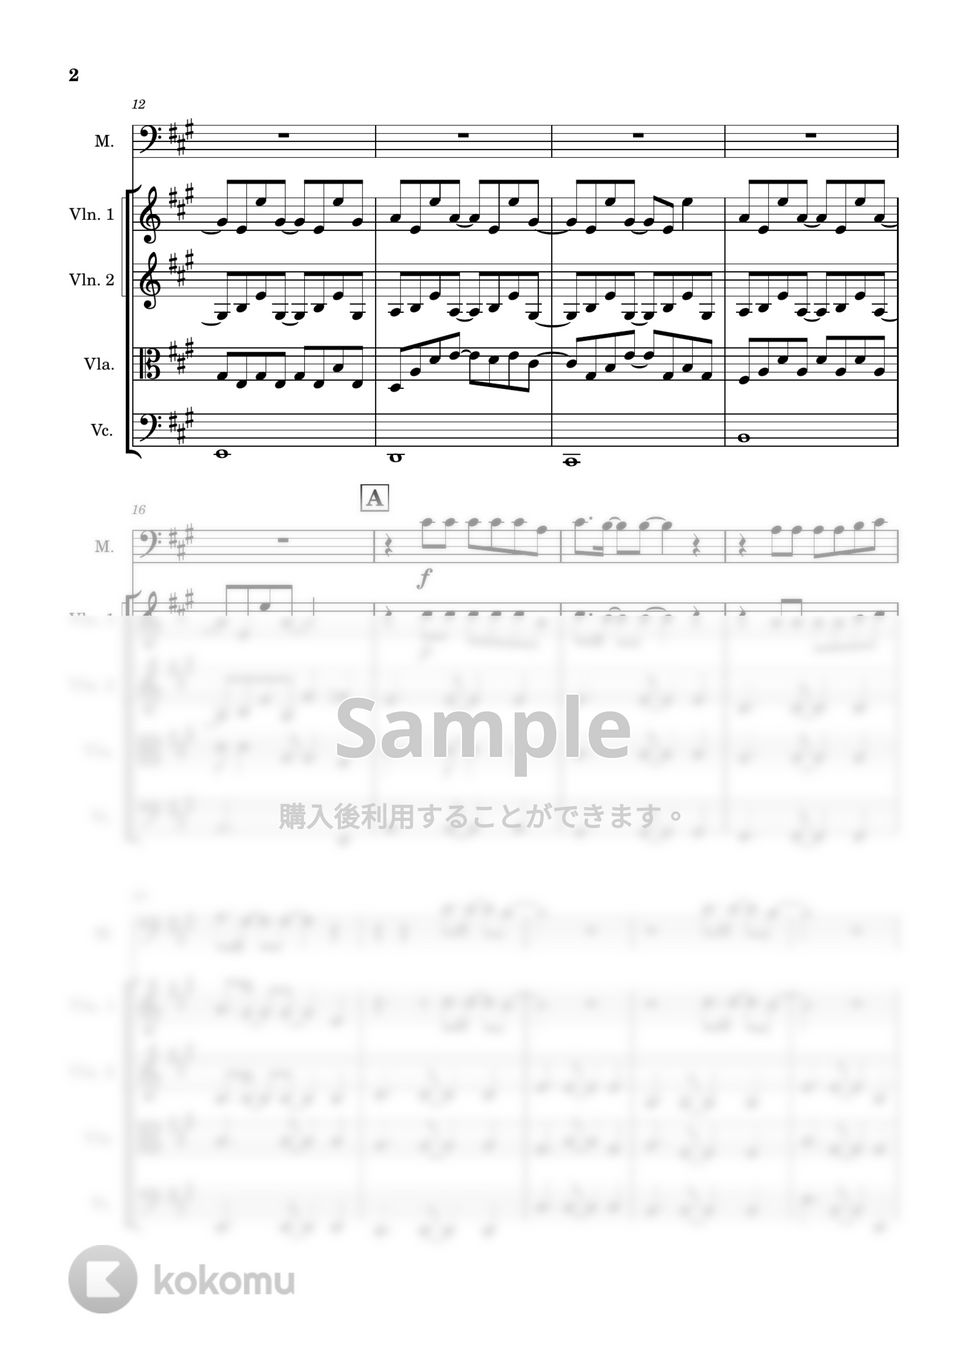 山下達郎 - クリスマス・イブ (弦楽四重奏+ボーカル) by Cellotto